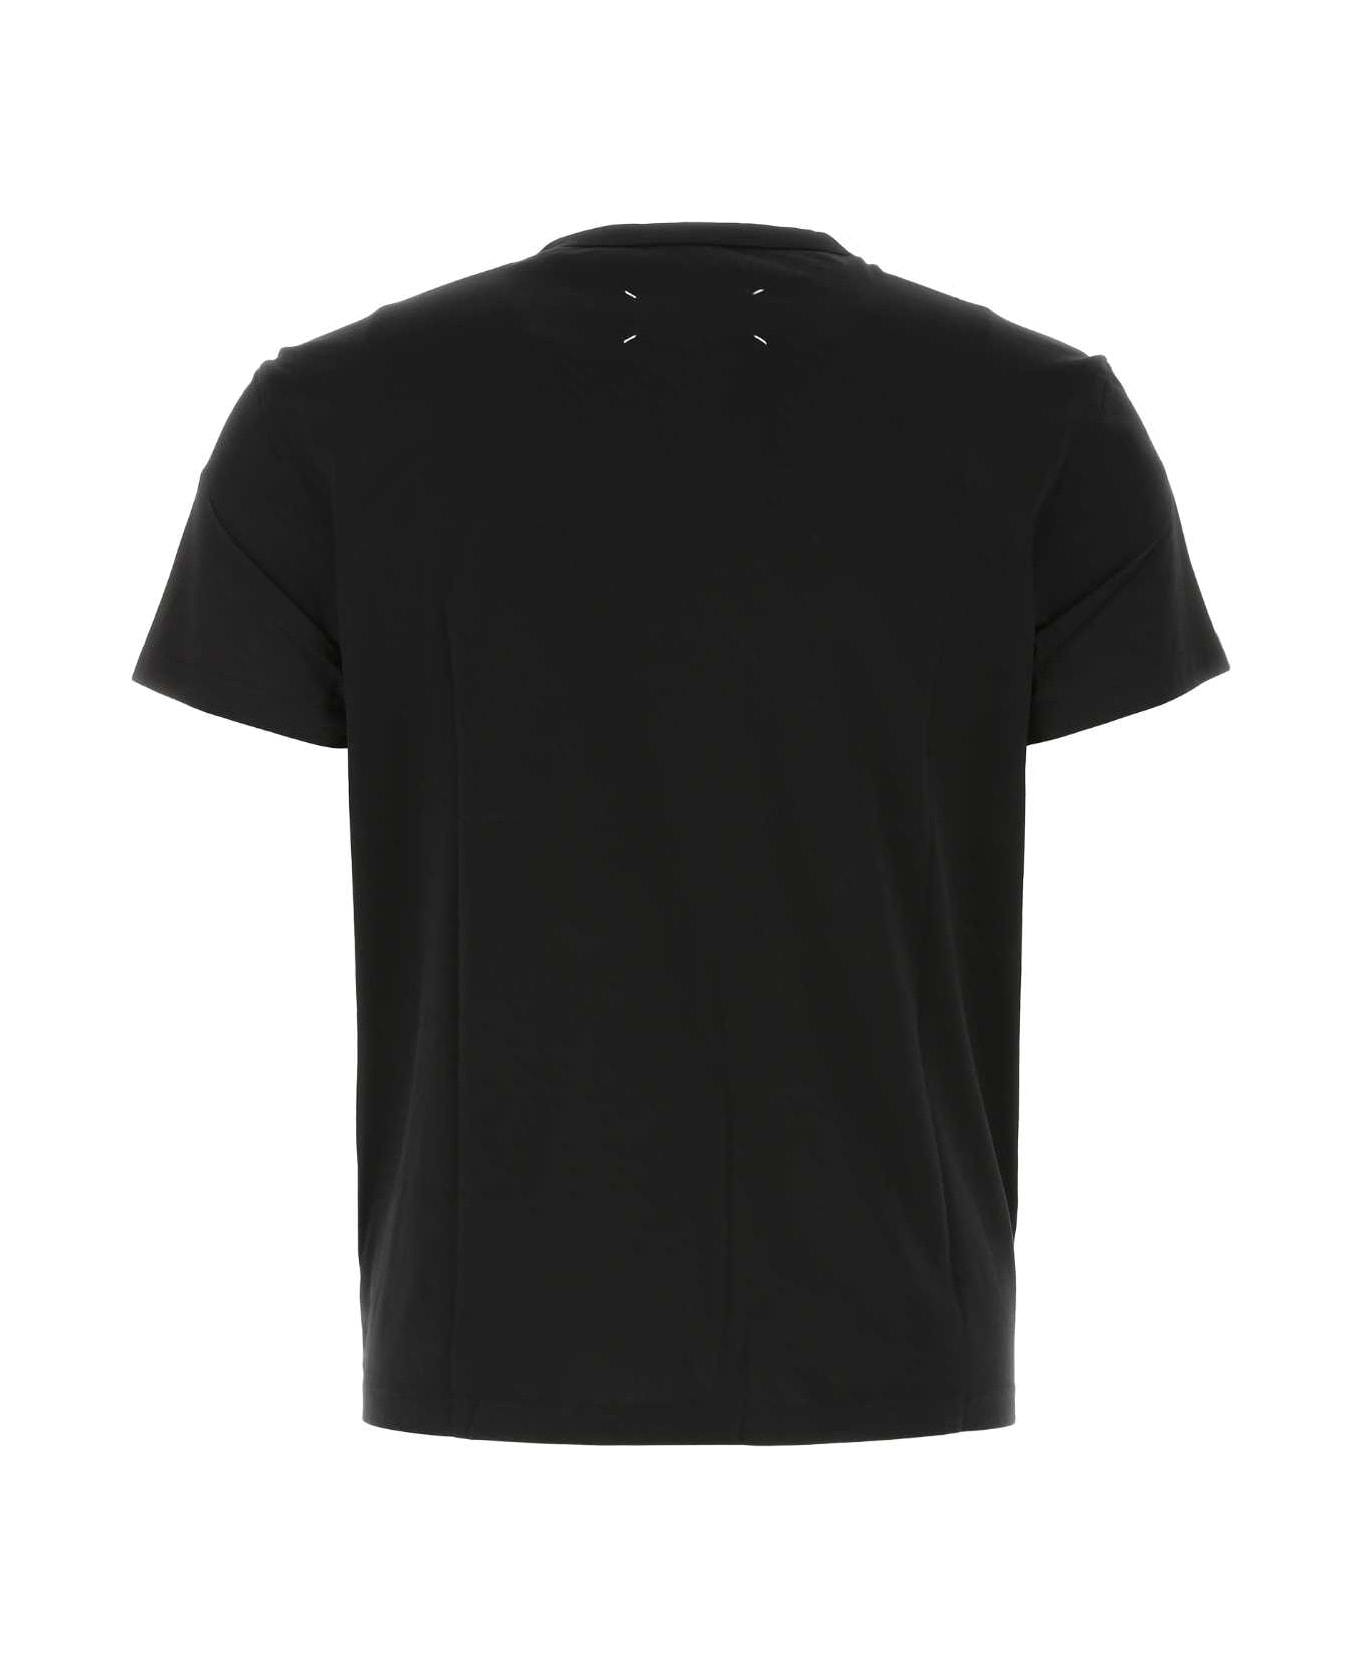 Maison Margiela Black Cotton T-shirt - 900 シャツ